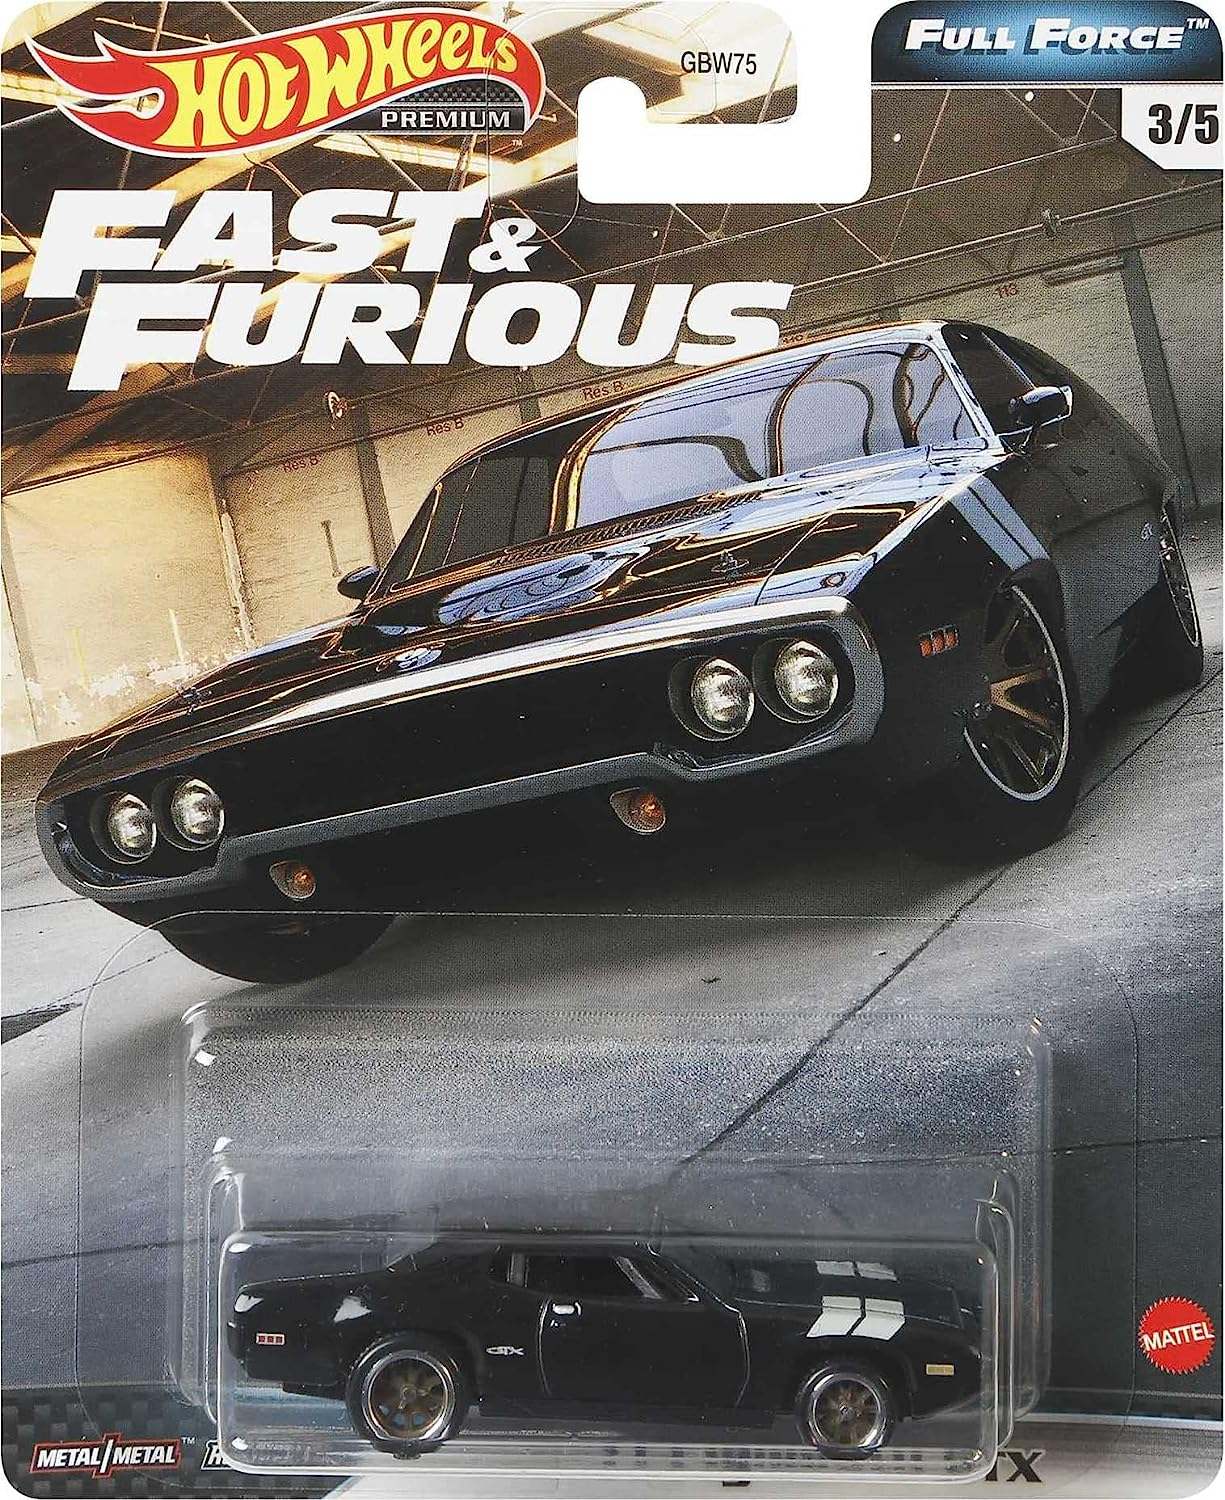 Hot Wheels Premium 1:64 Fast & Furious 1971 Plymouth GTX